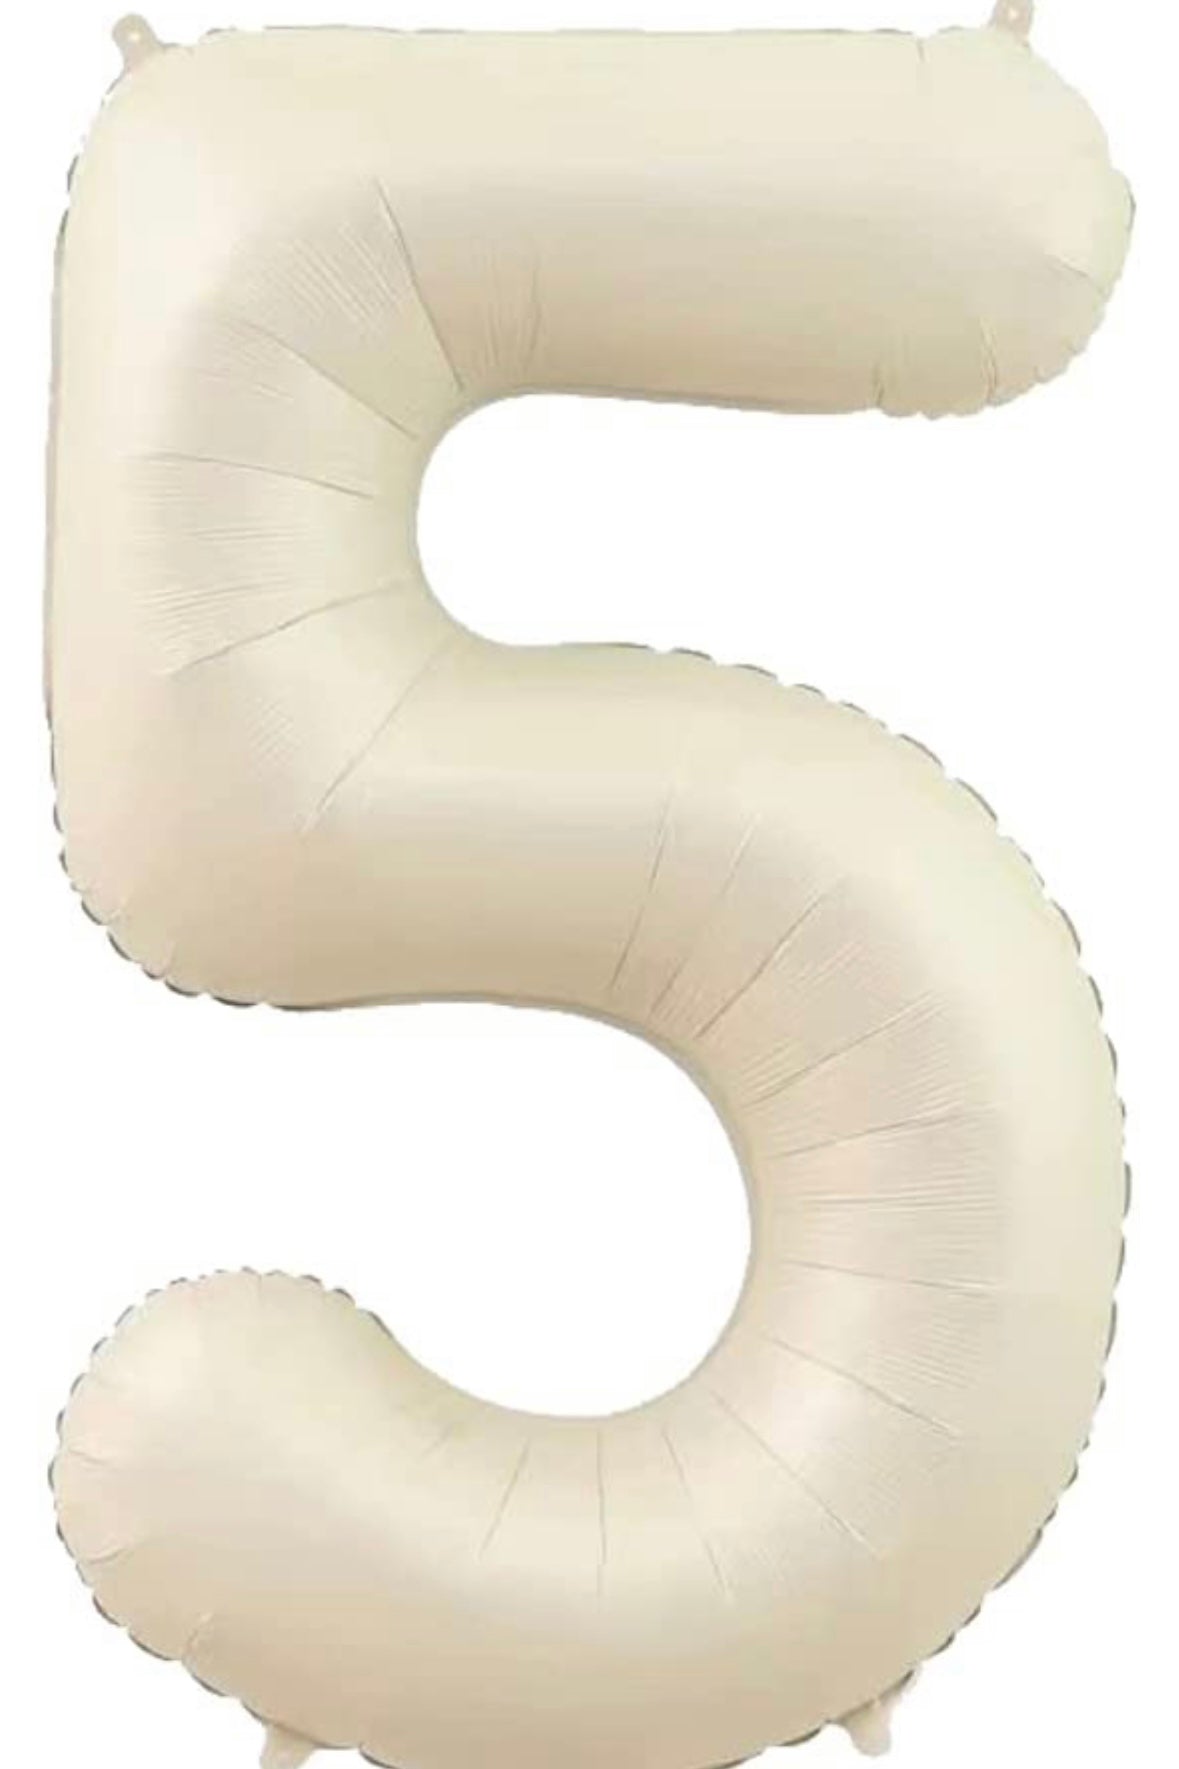 【number shape 60cm】Ivory